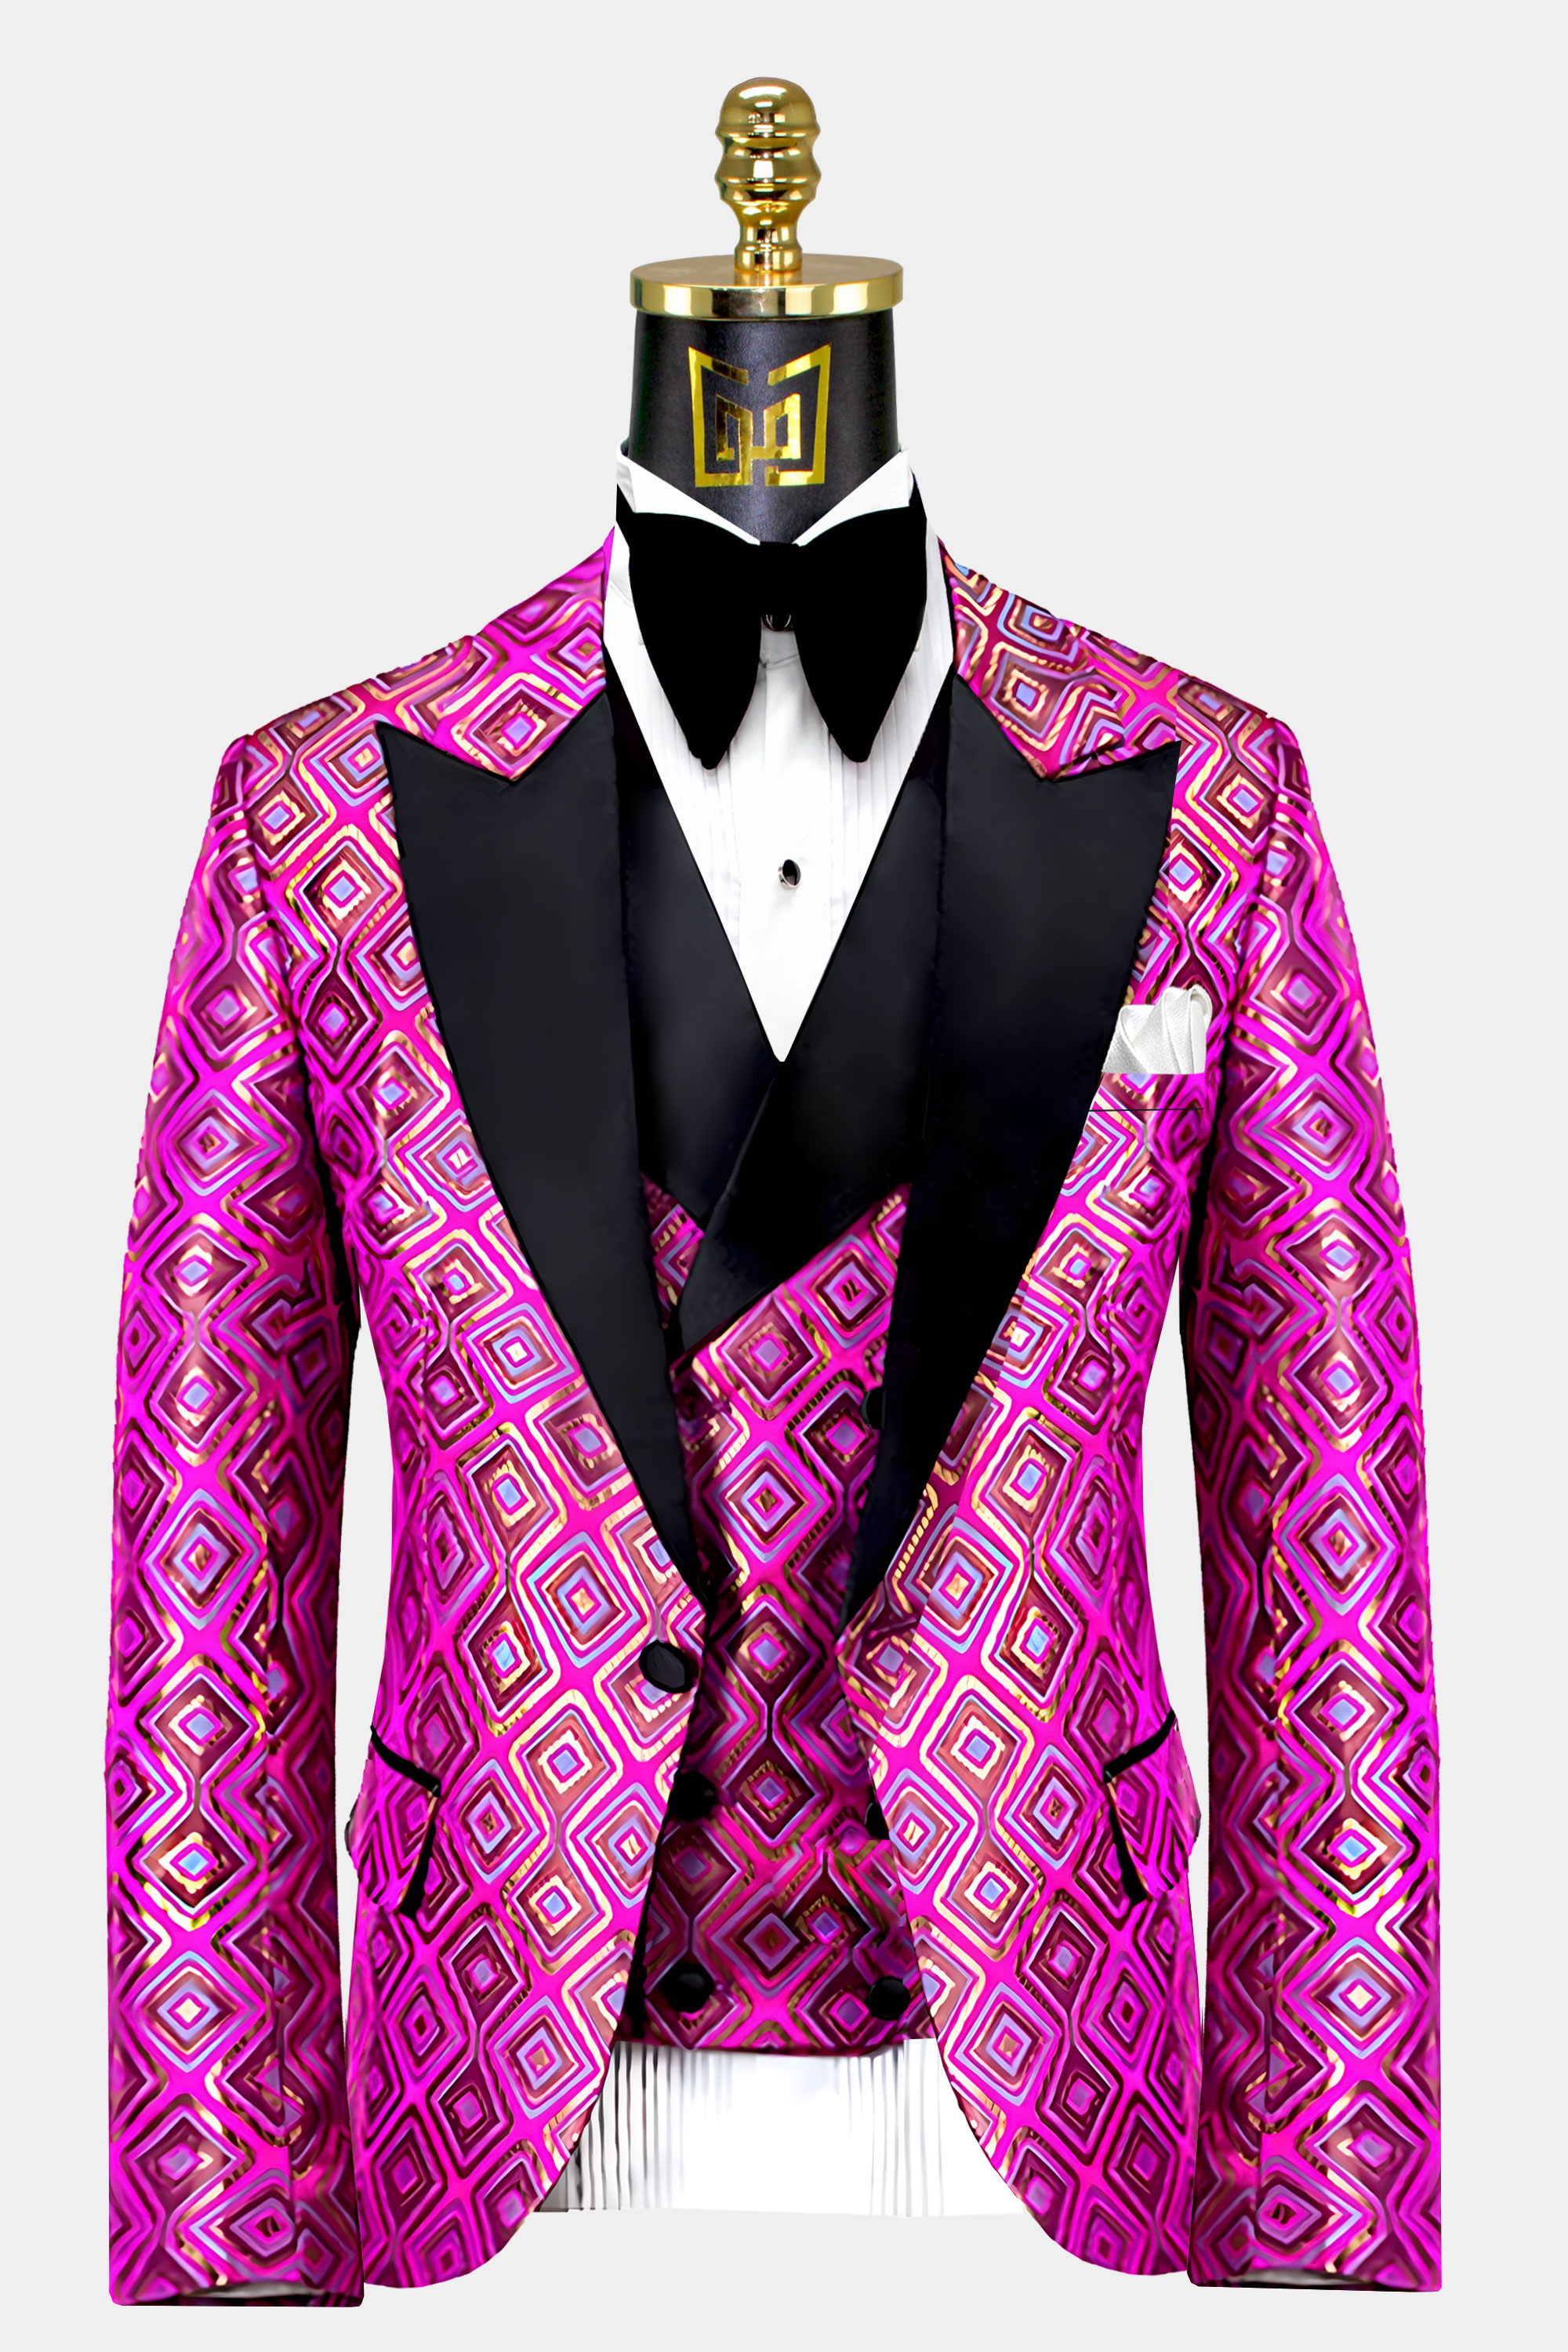 Pink and Gold Tuxedo Suit | Gentleman's Guru